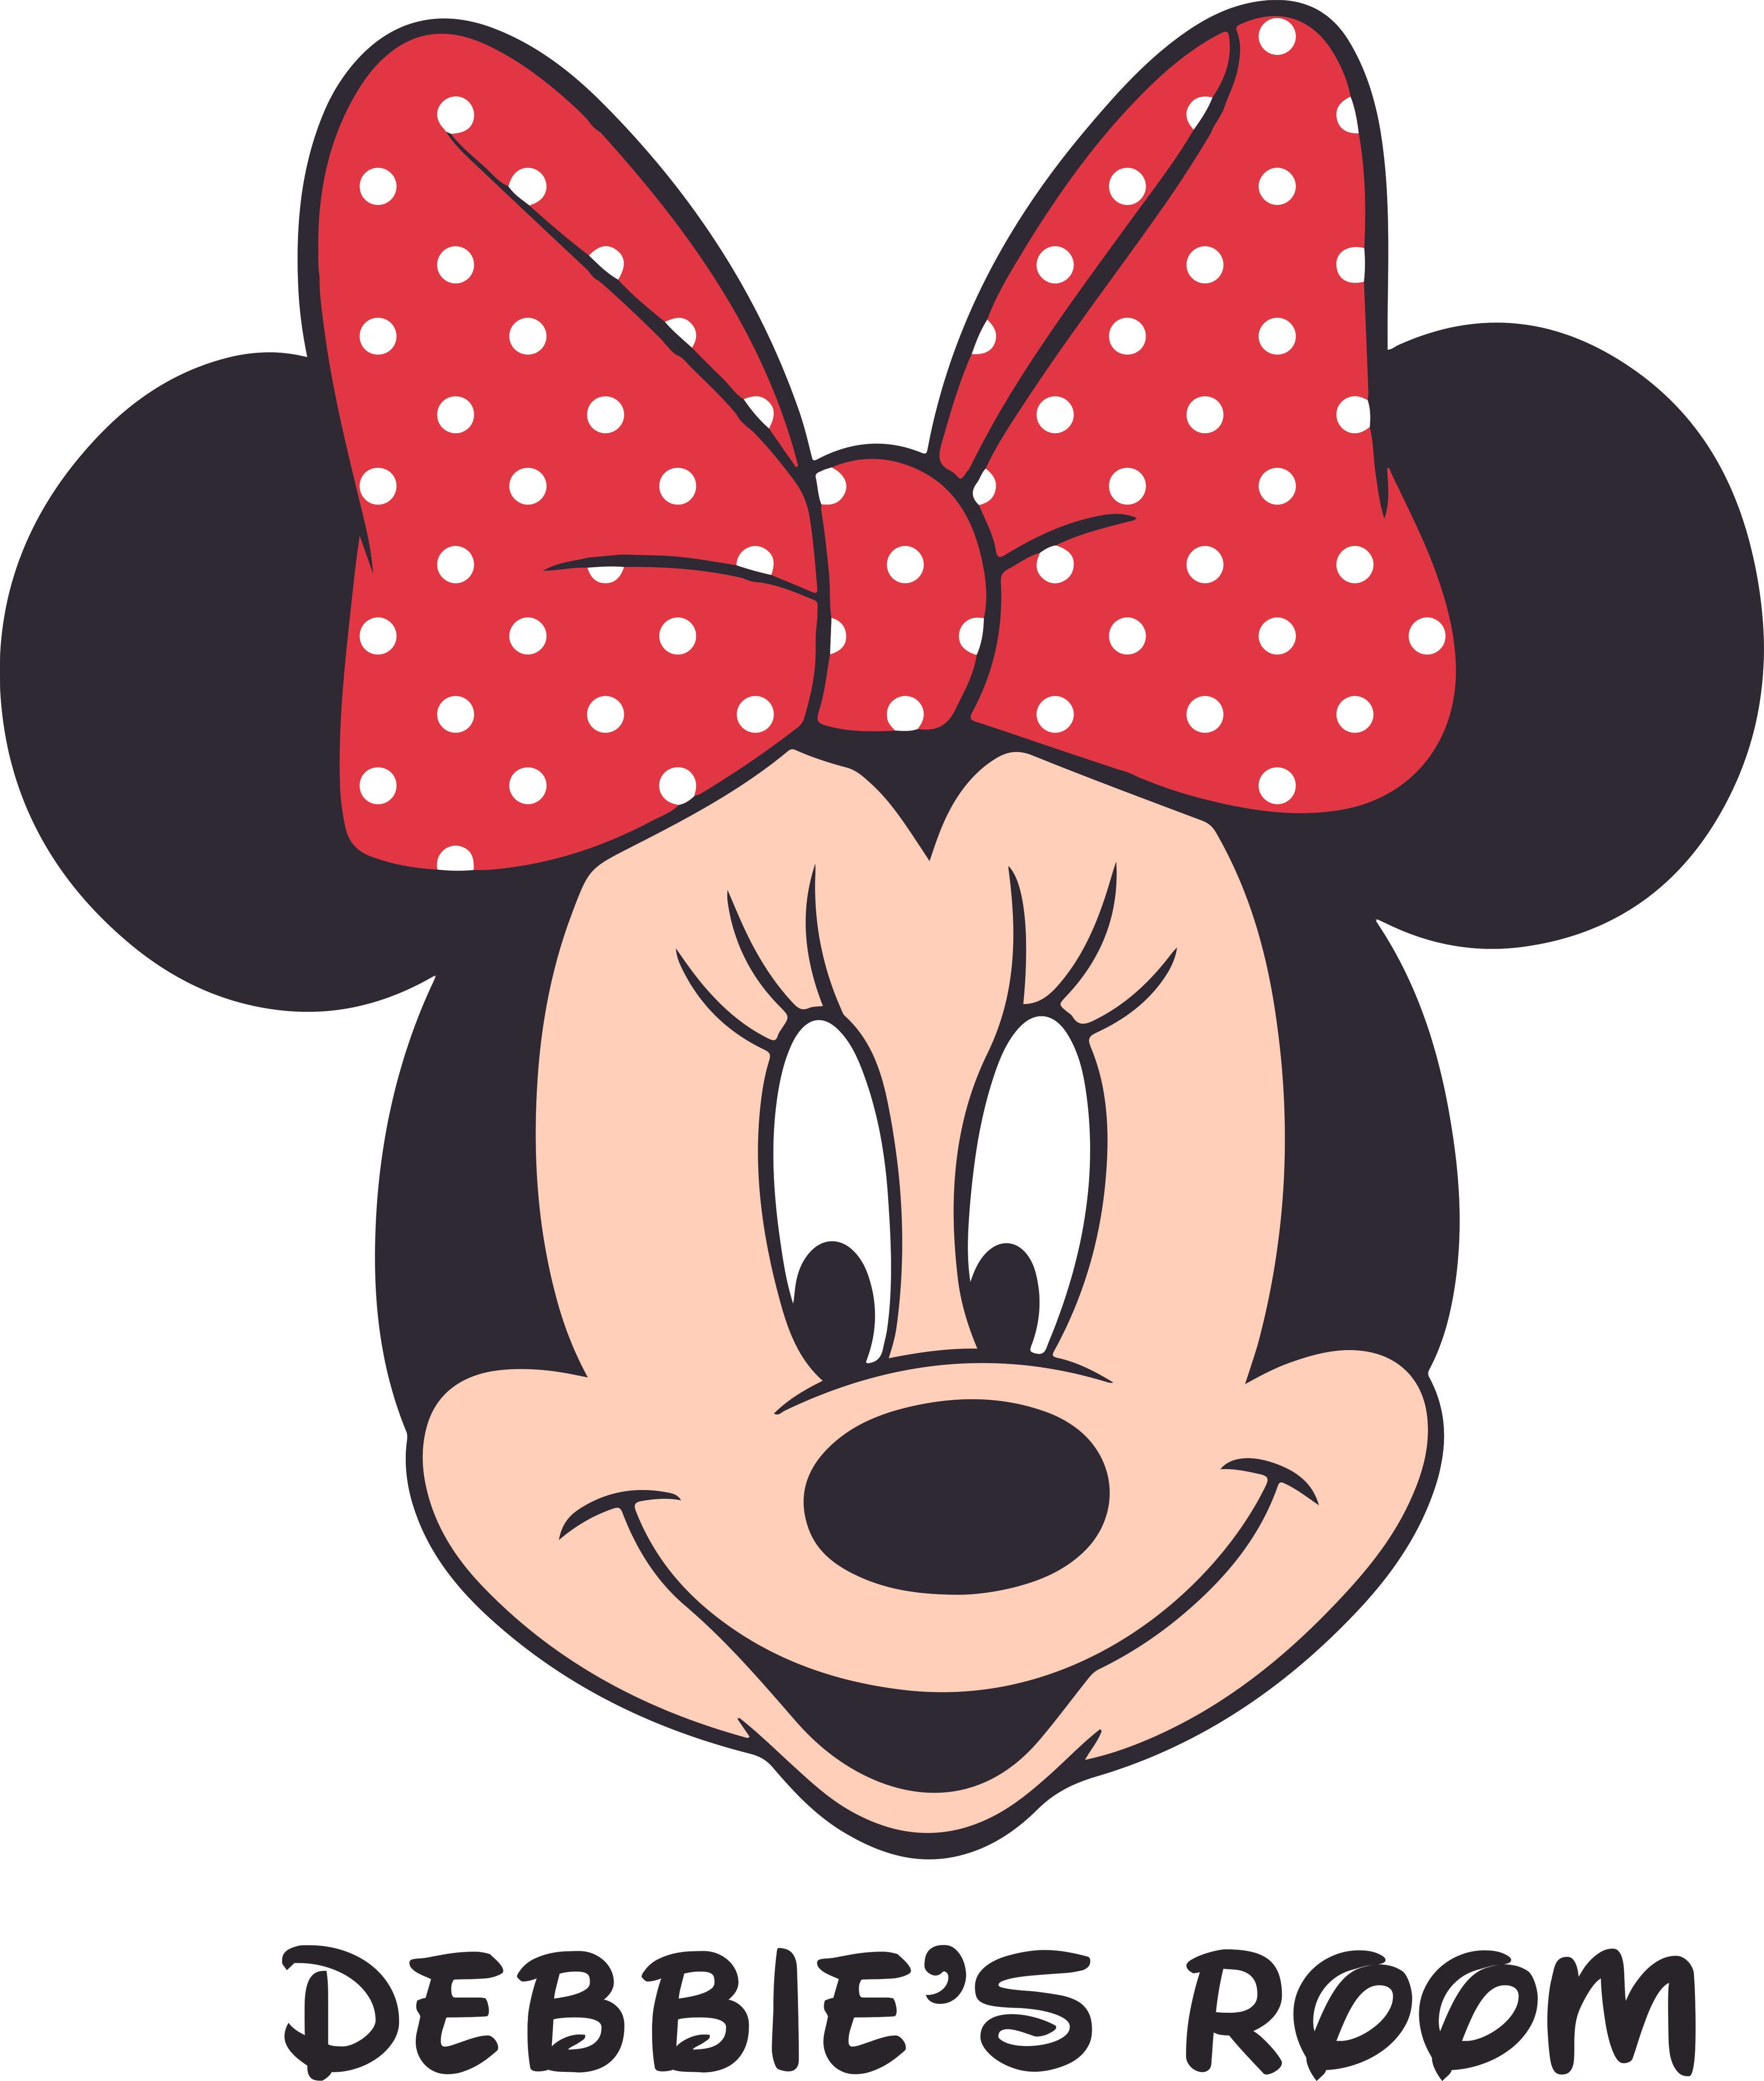 Minnie Mouse Face Cute Disney Cartoon Customized Wall Decal Custom